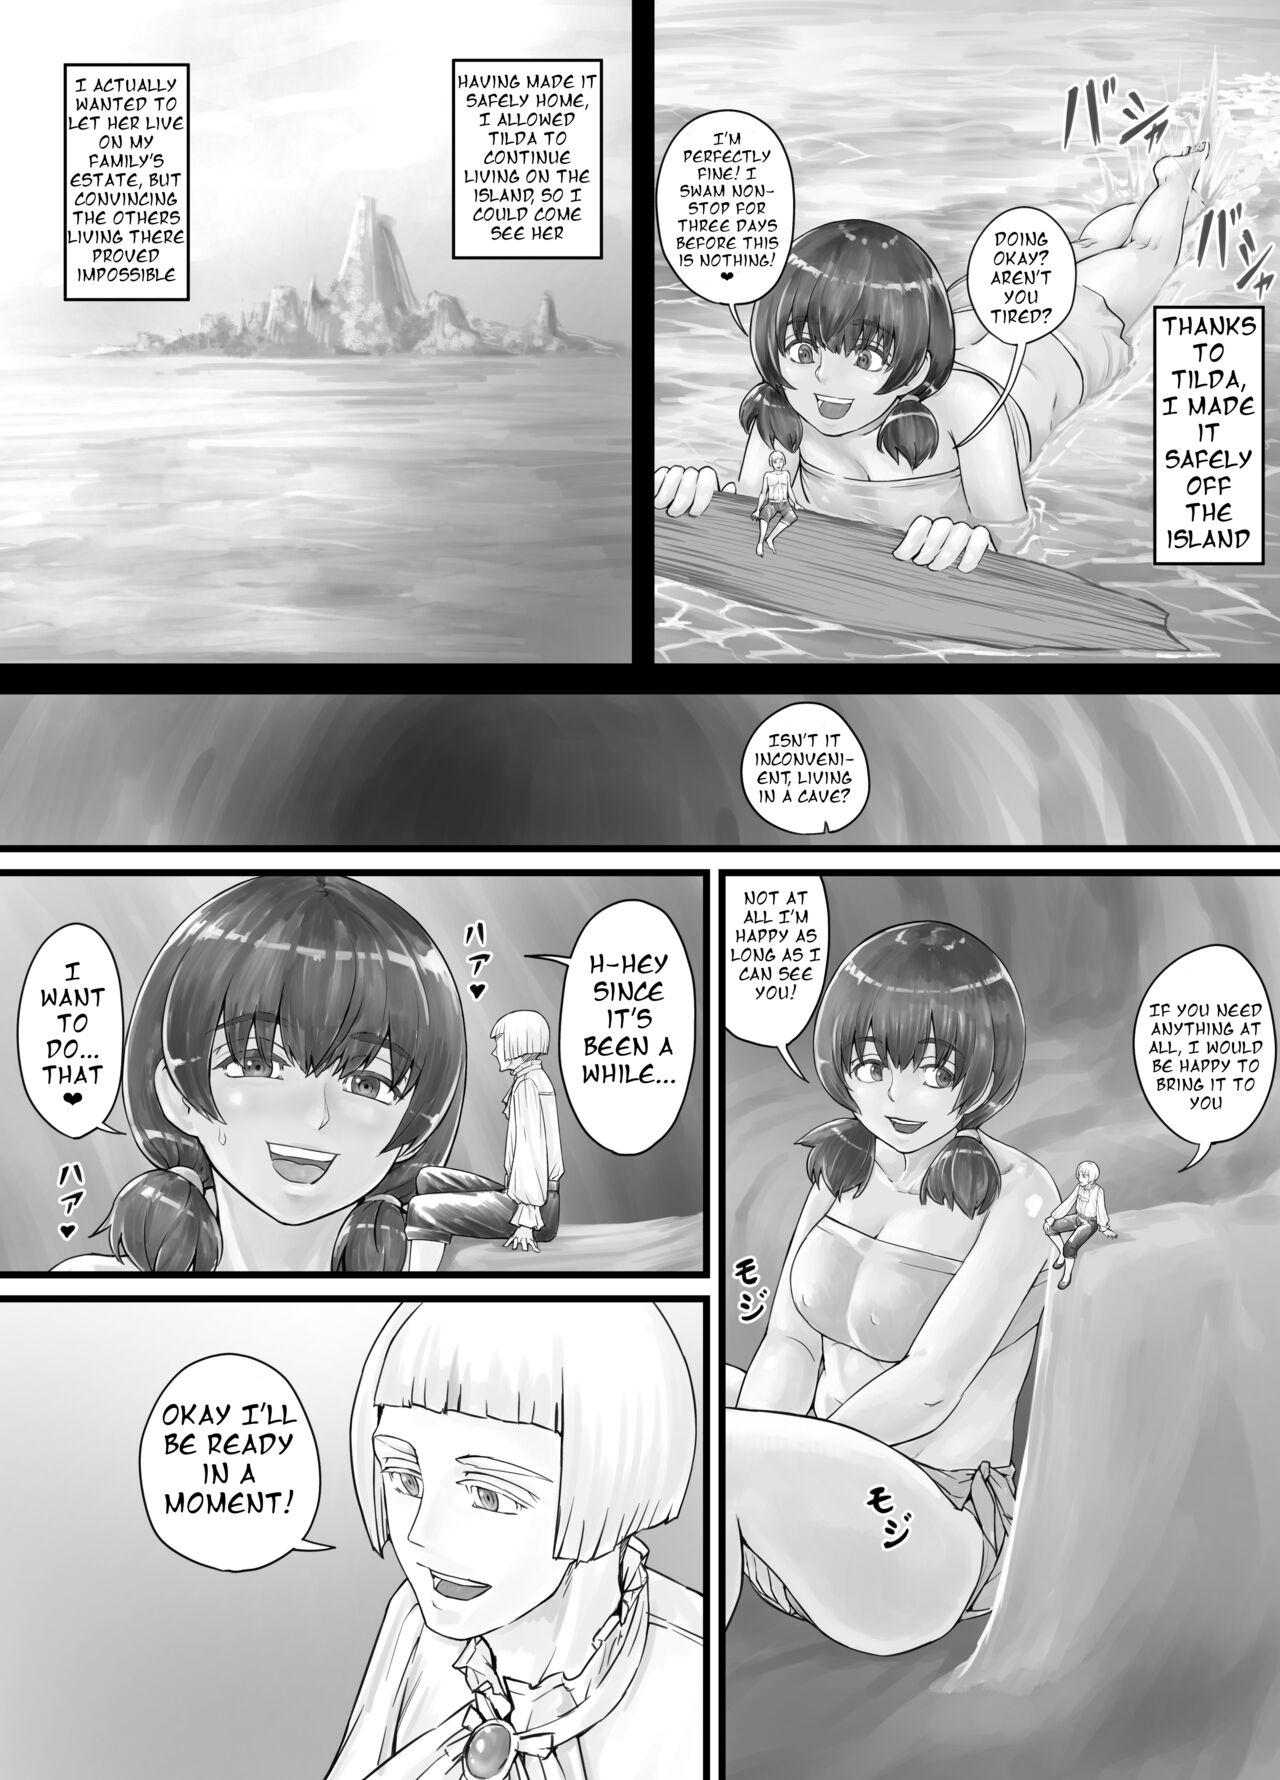 Oldman [DODOMESU3SEI] Kyojin Musume-chan Manga Ch. 1-5 [English] - Original Spy Camera - Page 5